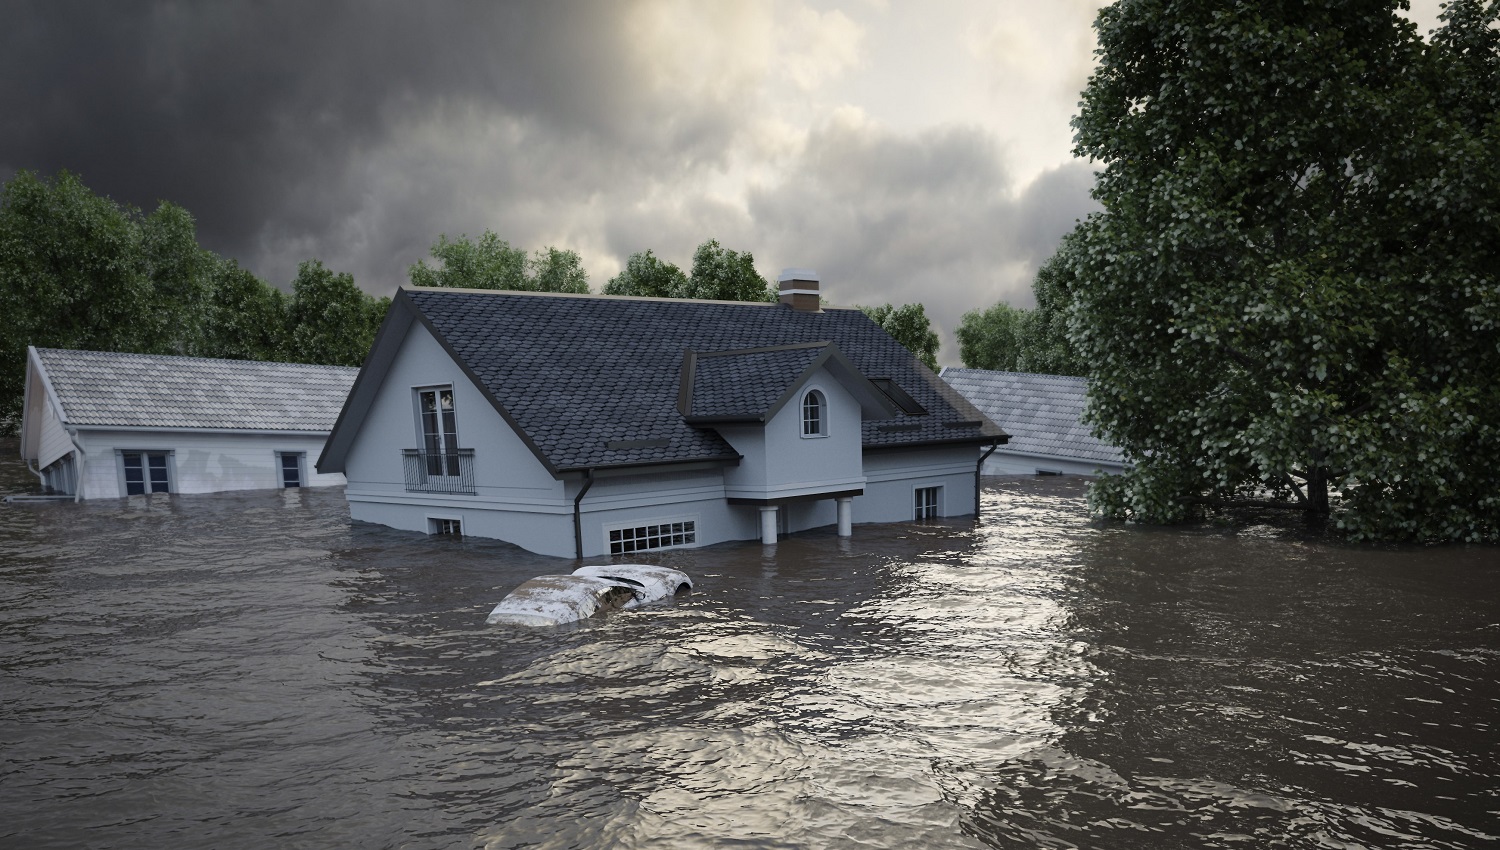 ¿Qué tipo de sistema de alerta debería utilizarse en zonas con riesgo de inundación?